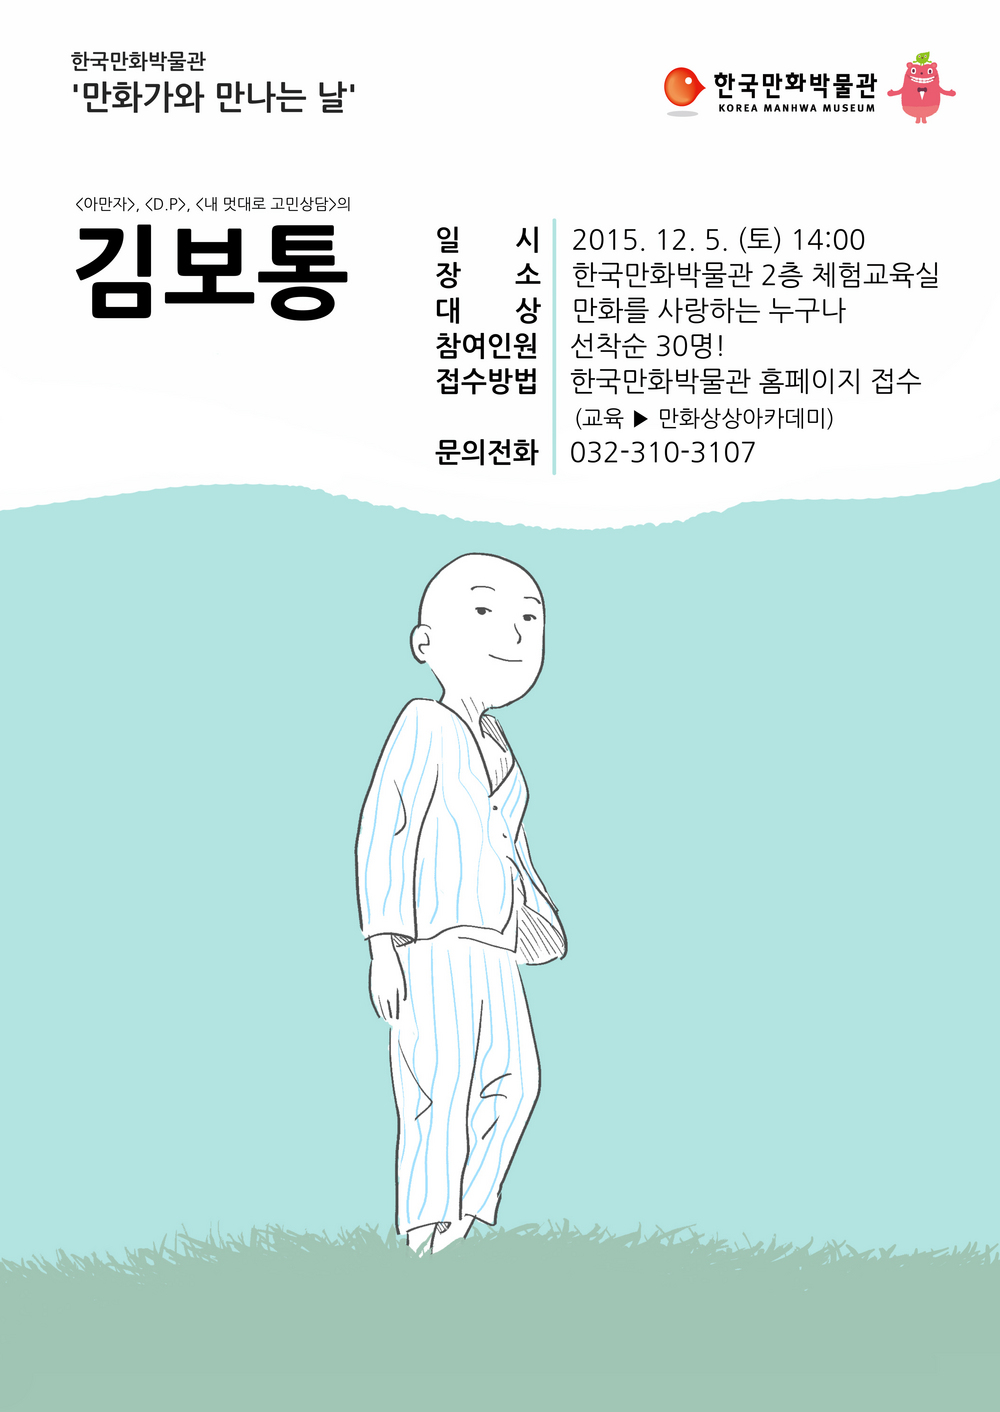 한국만화박물관 만화가와 만나는 날(김보통 작가) 행사안내 포스터